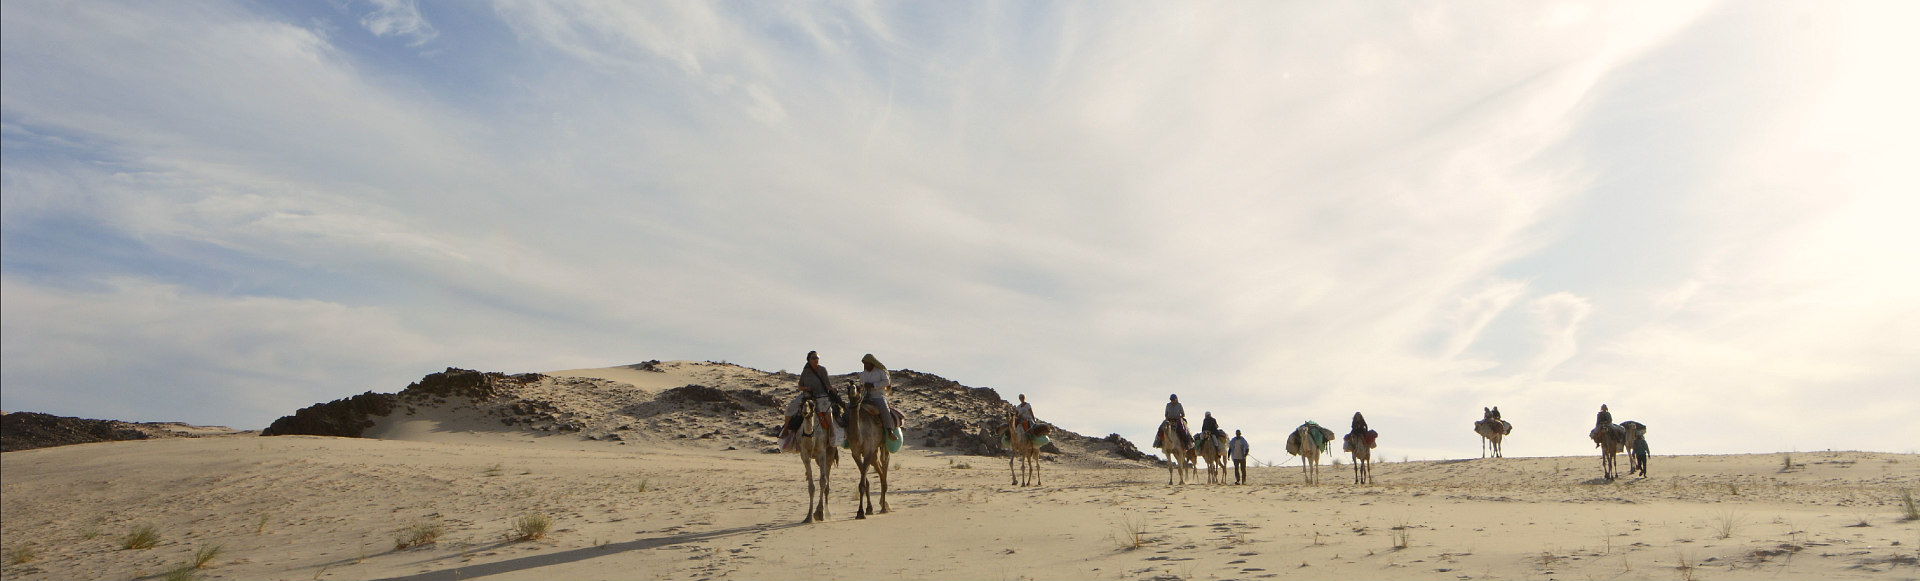 DesertJoy nomadisch reizen met kamelen